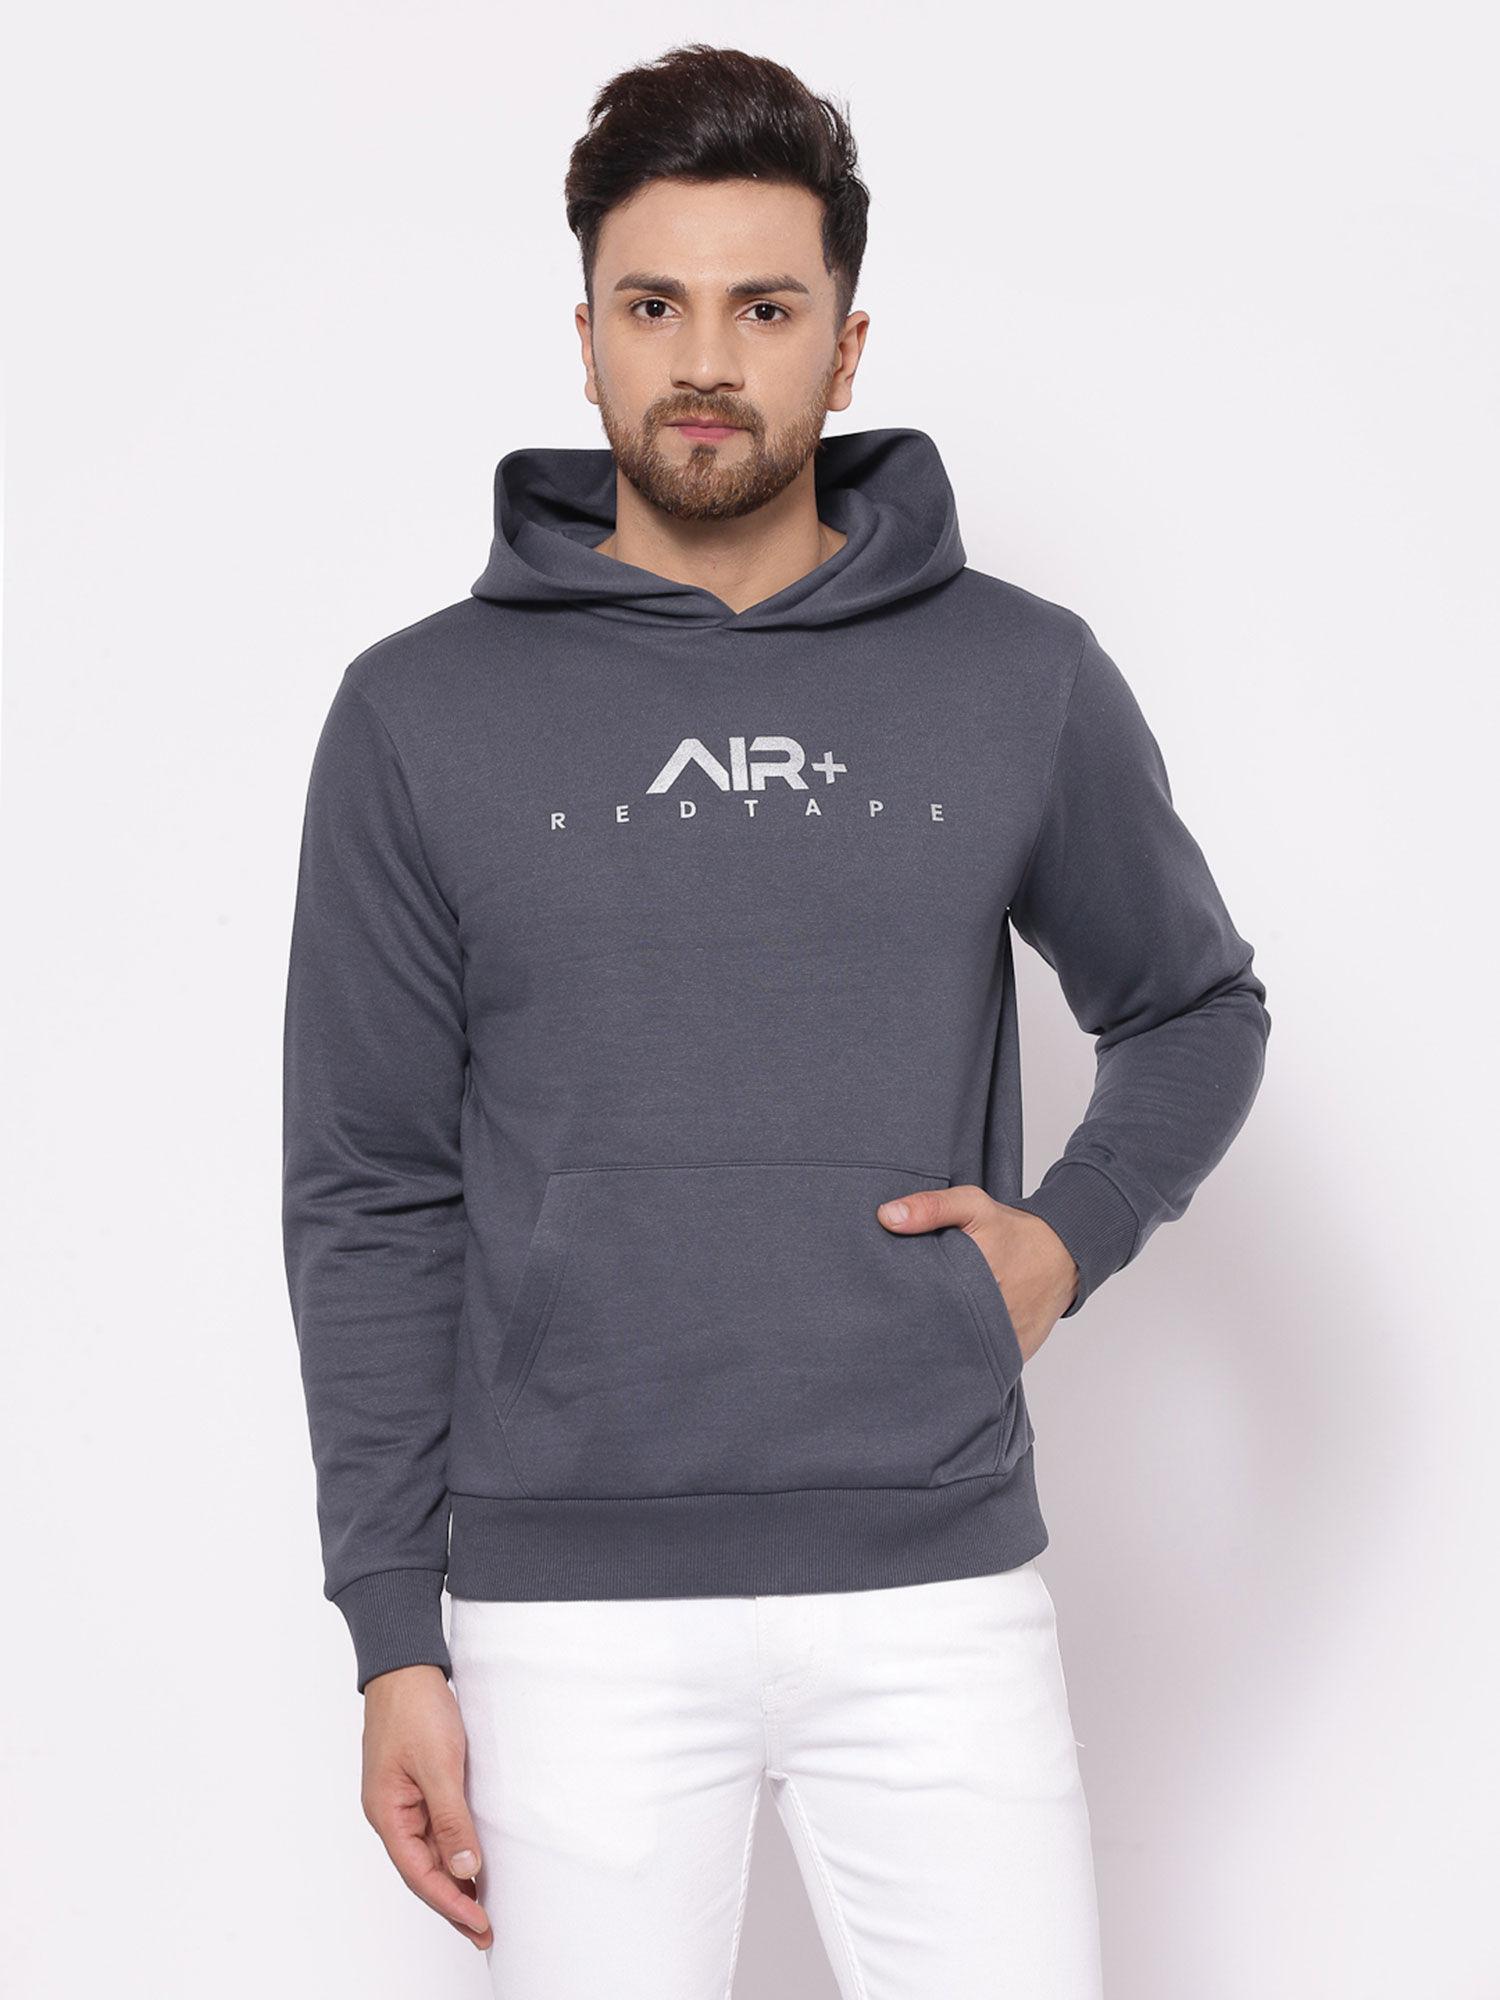 mens space grey hoodies